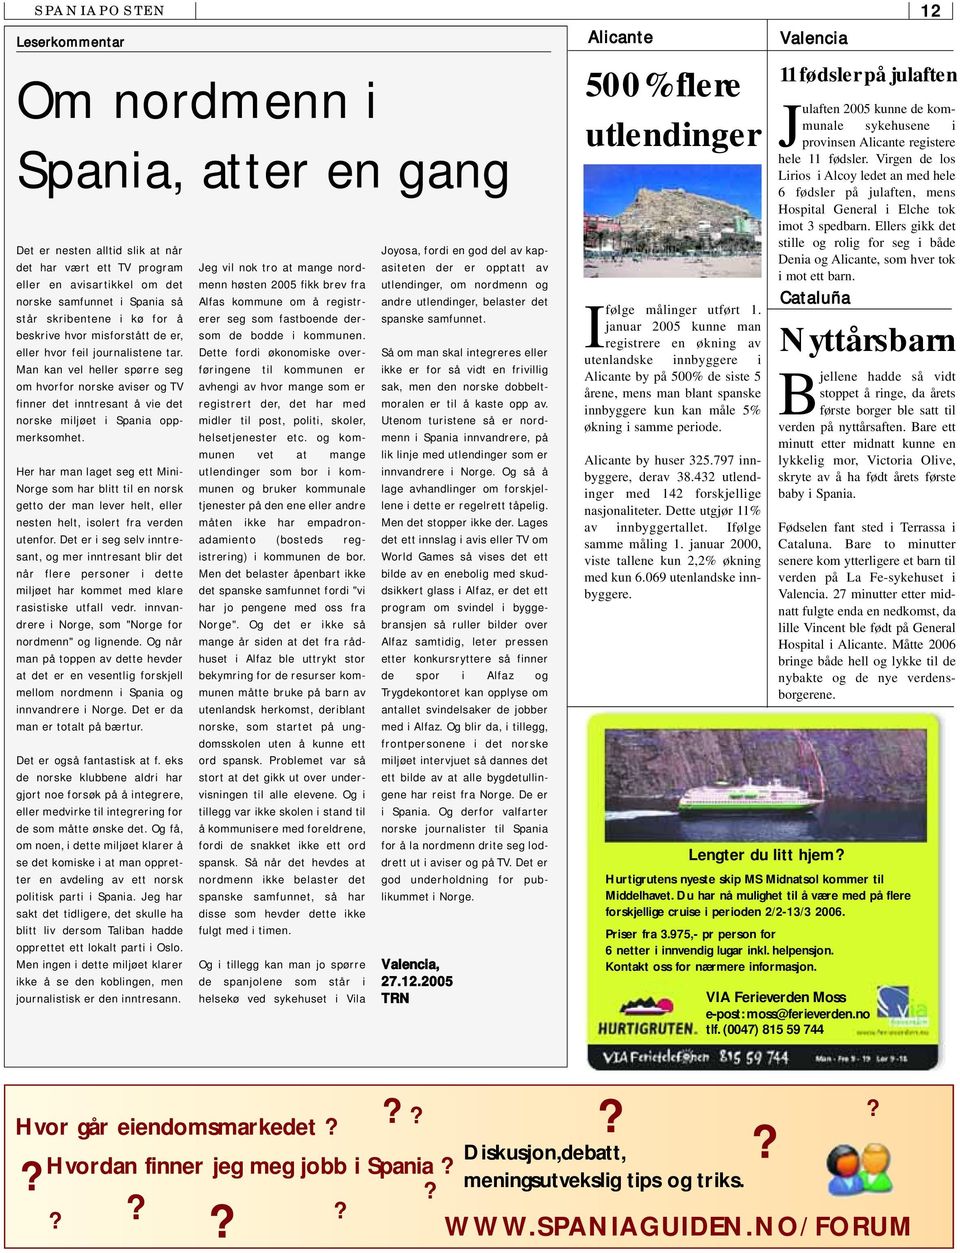 Man kan vel heller spørre seg om hvorfor norske aviser og TV finner det inntresant å vie det norske miljøet i Spania oppmerksomhet.